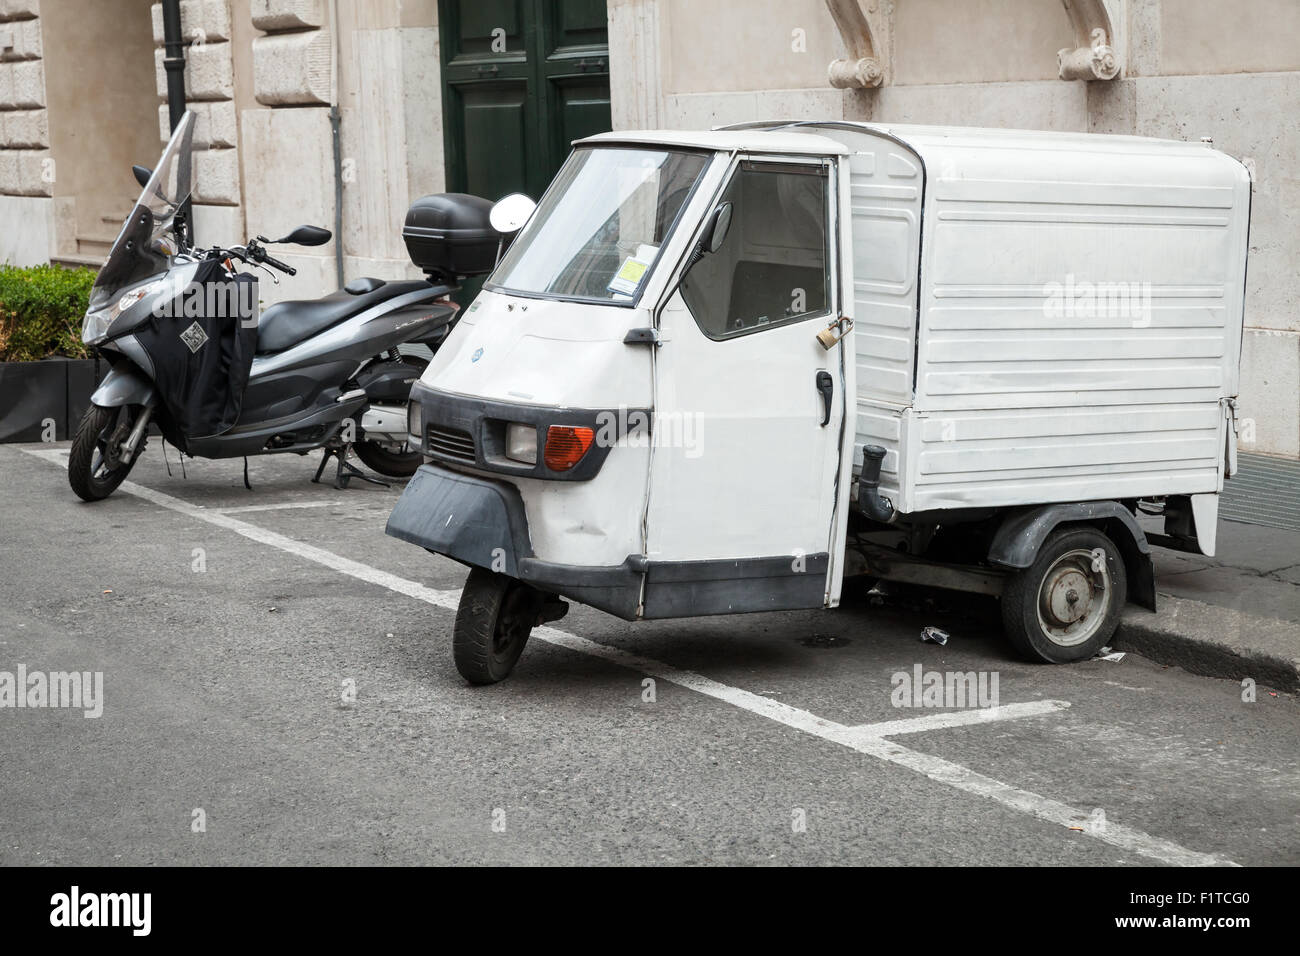 Roma, Italia - 07 agosto 2015: Bianco Piaggio Ape 50 Van sta parcheggiato su una strada in Roma con lucchetto sulla porta Foto Stock